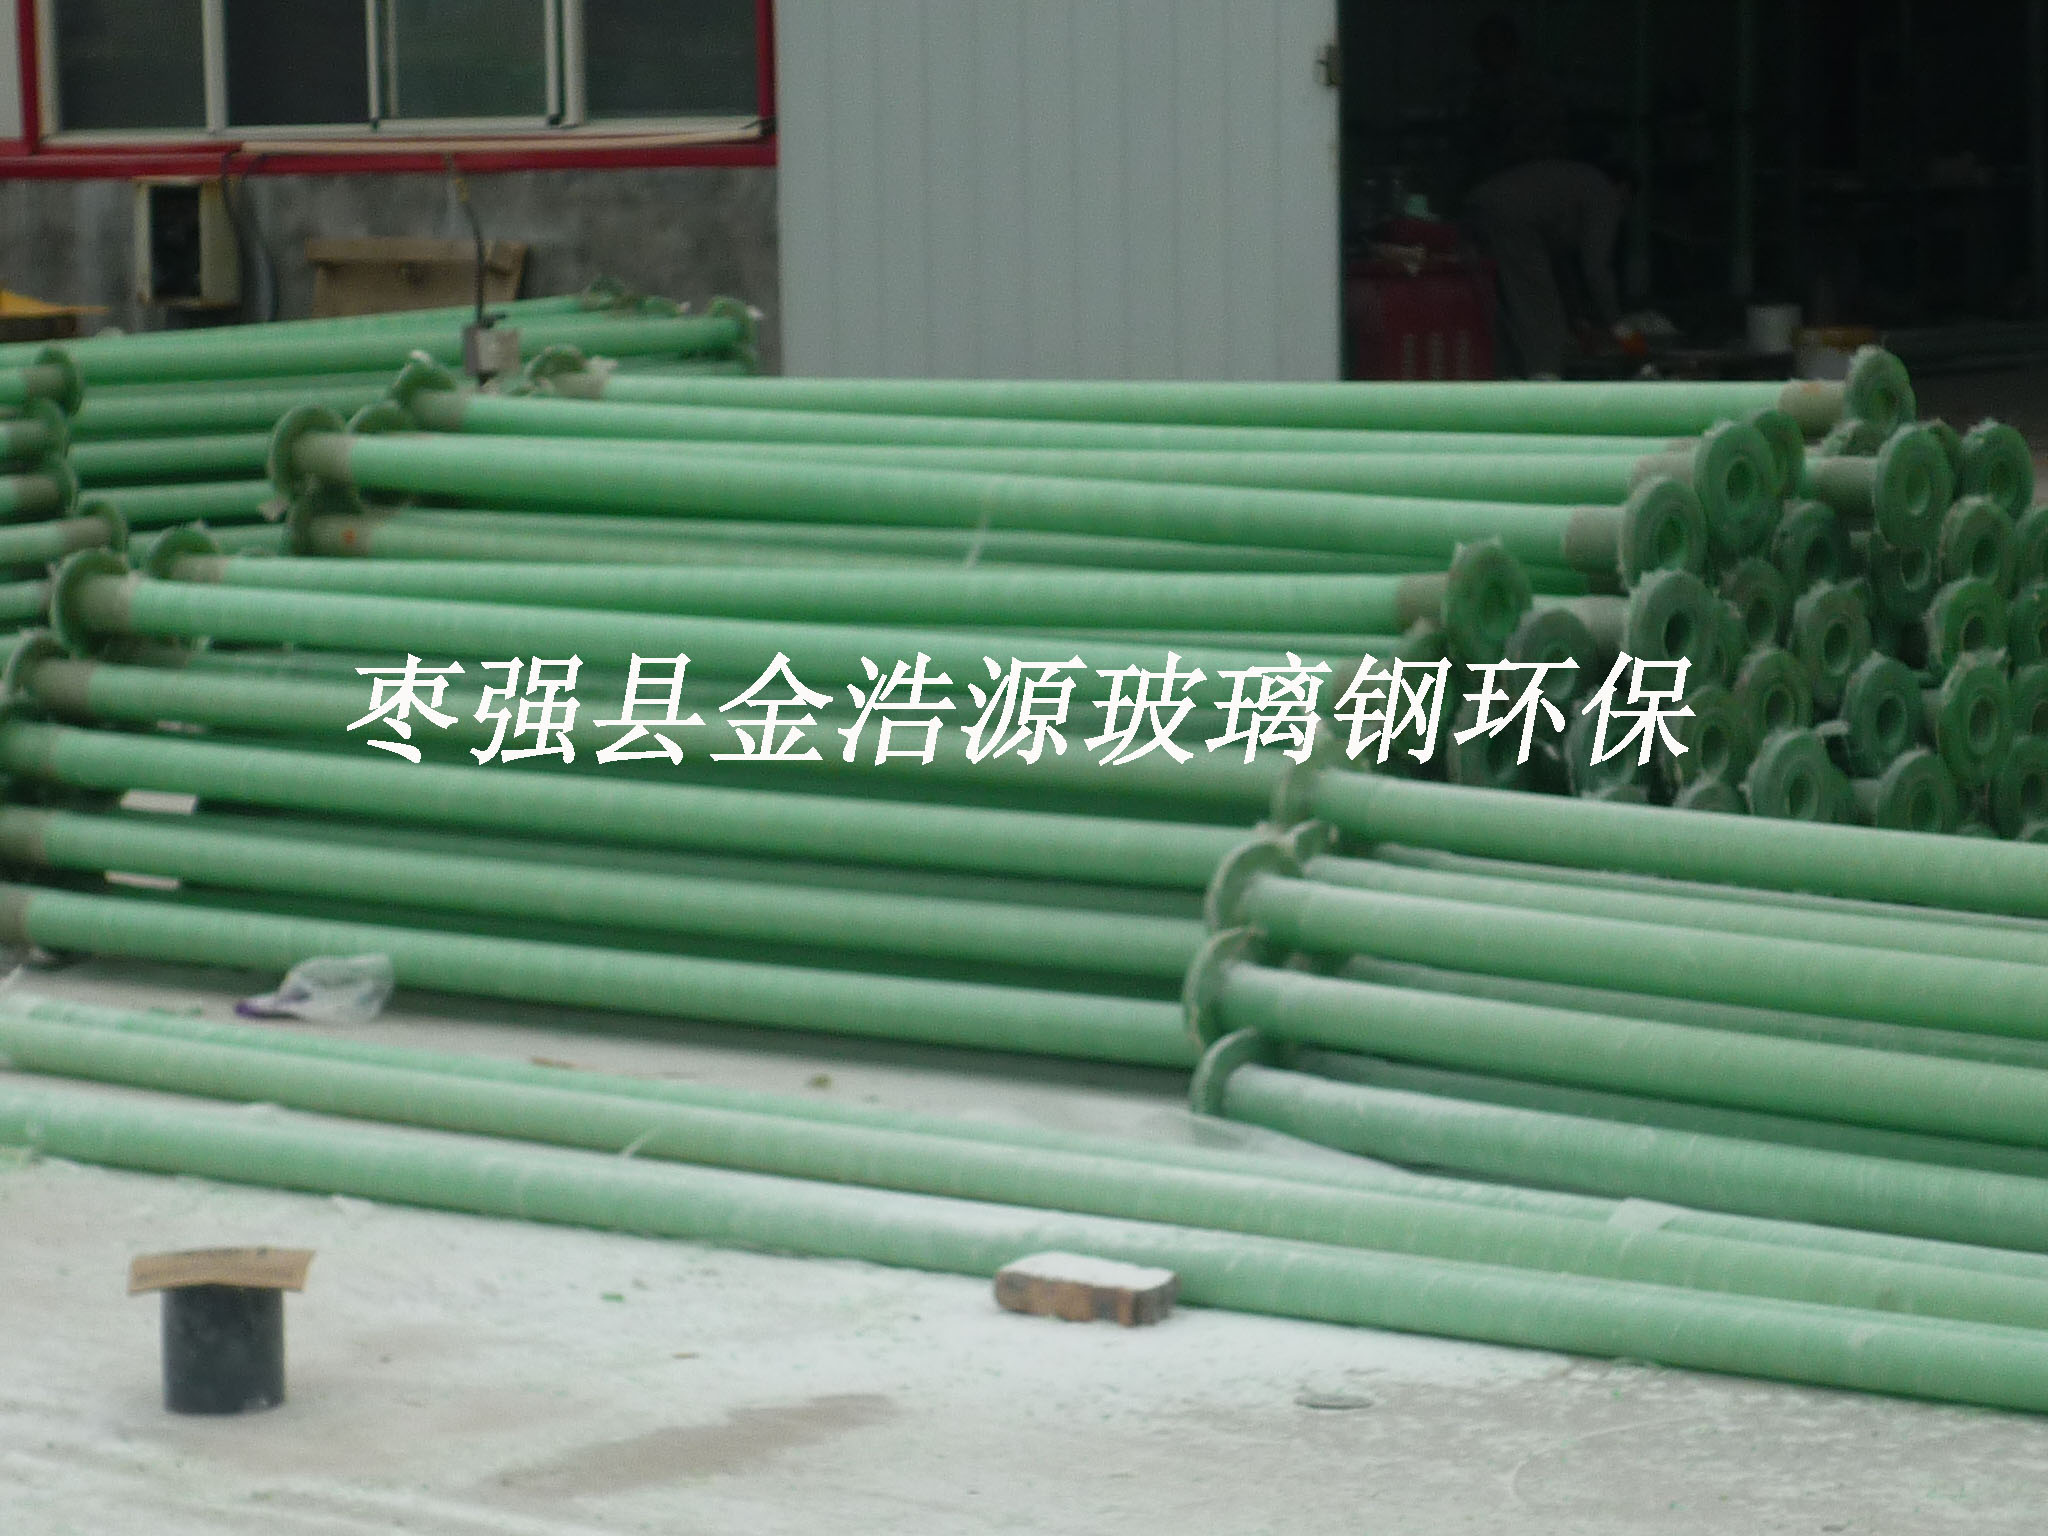 供应供应河南濮阳 玻璃钢井管 管道生产厂家 厂家直销图片